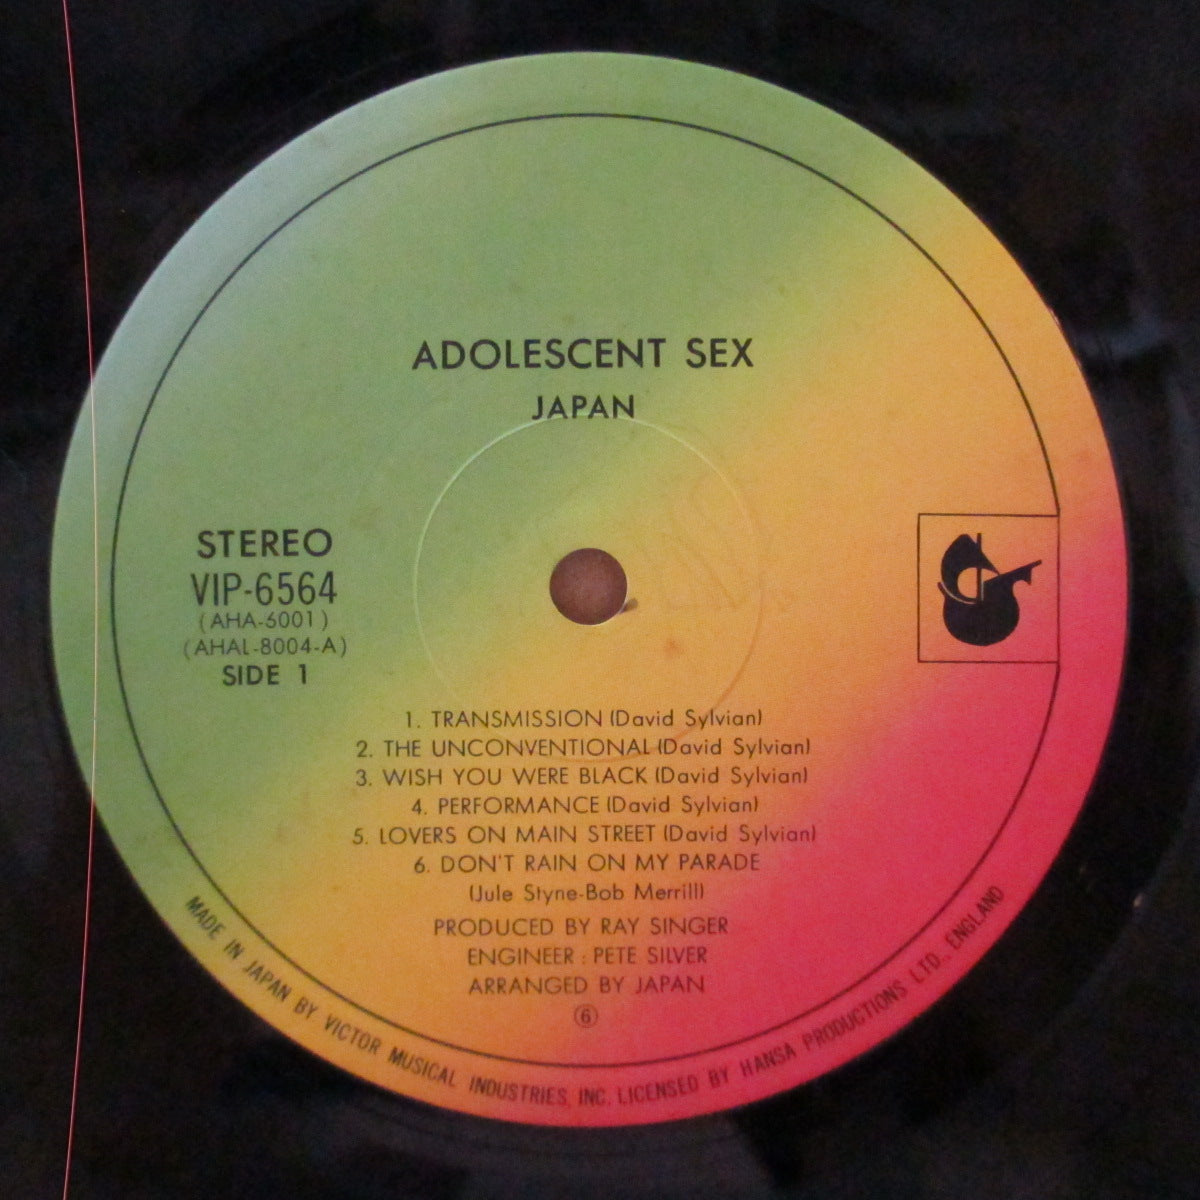 JAPAN (ジャパン) - Adolescent Sex - 果てしなき反抗 (Japan オリジナル LP+インサート